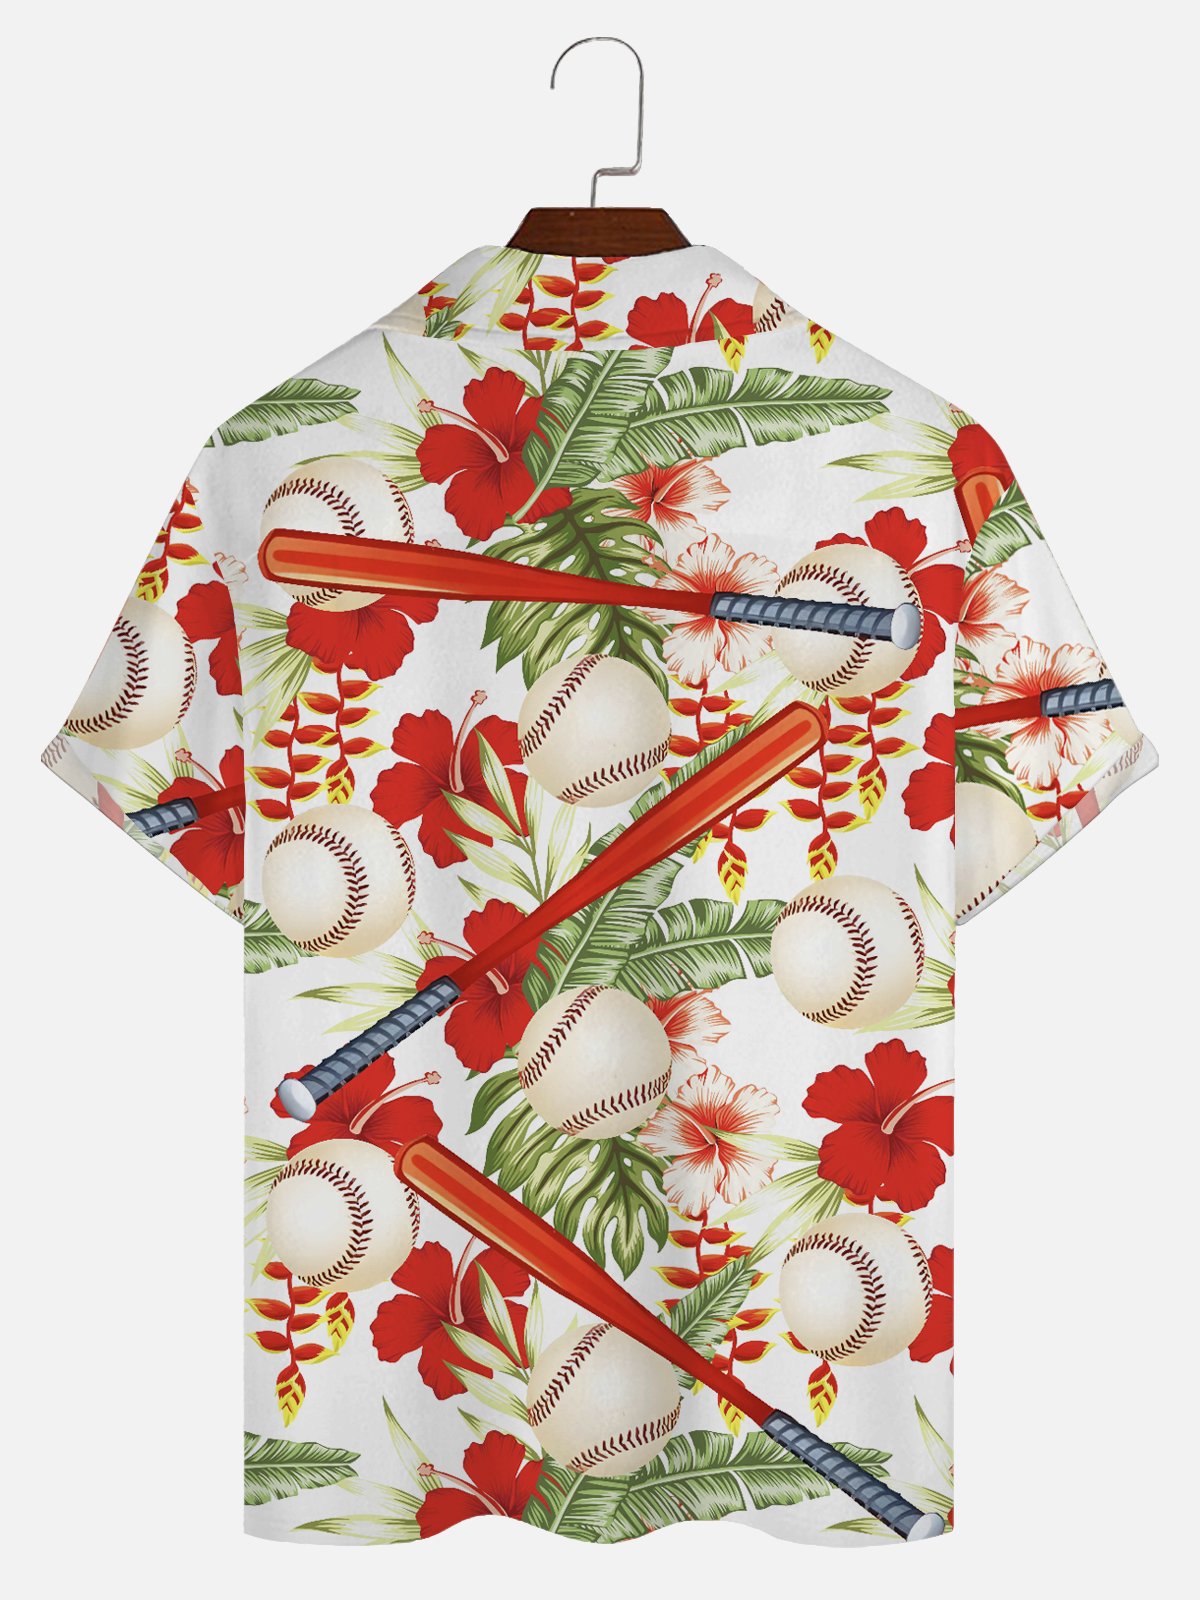 Royaura Beach Vacation Baseball Men's Hawaiian Shirts Tropical Floral Aloha Camp Pocket Shirts